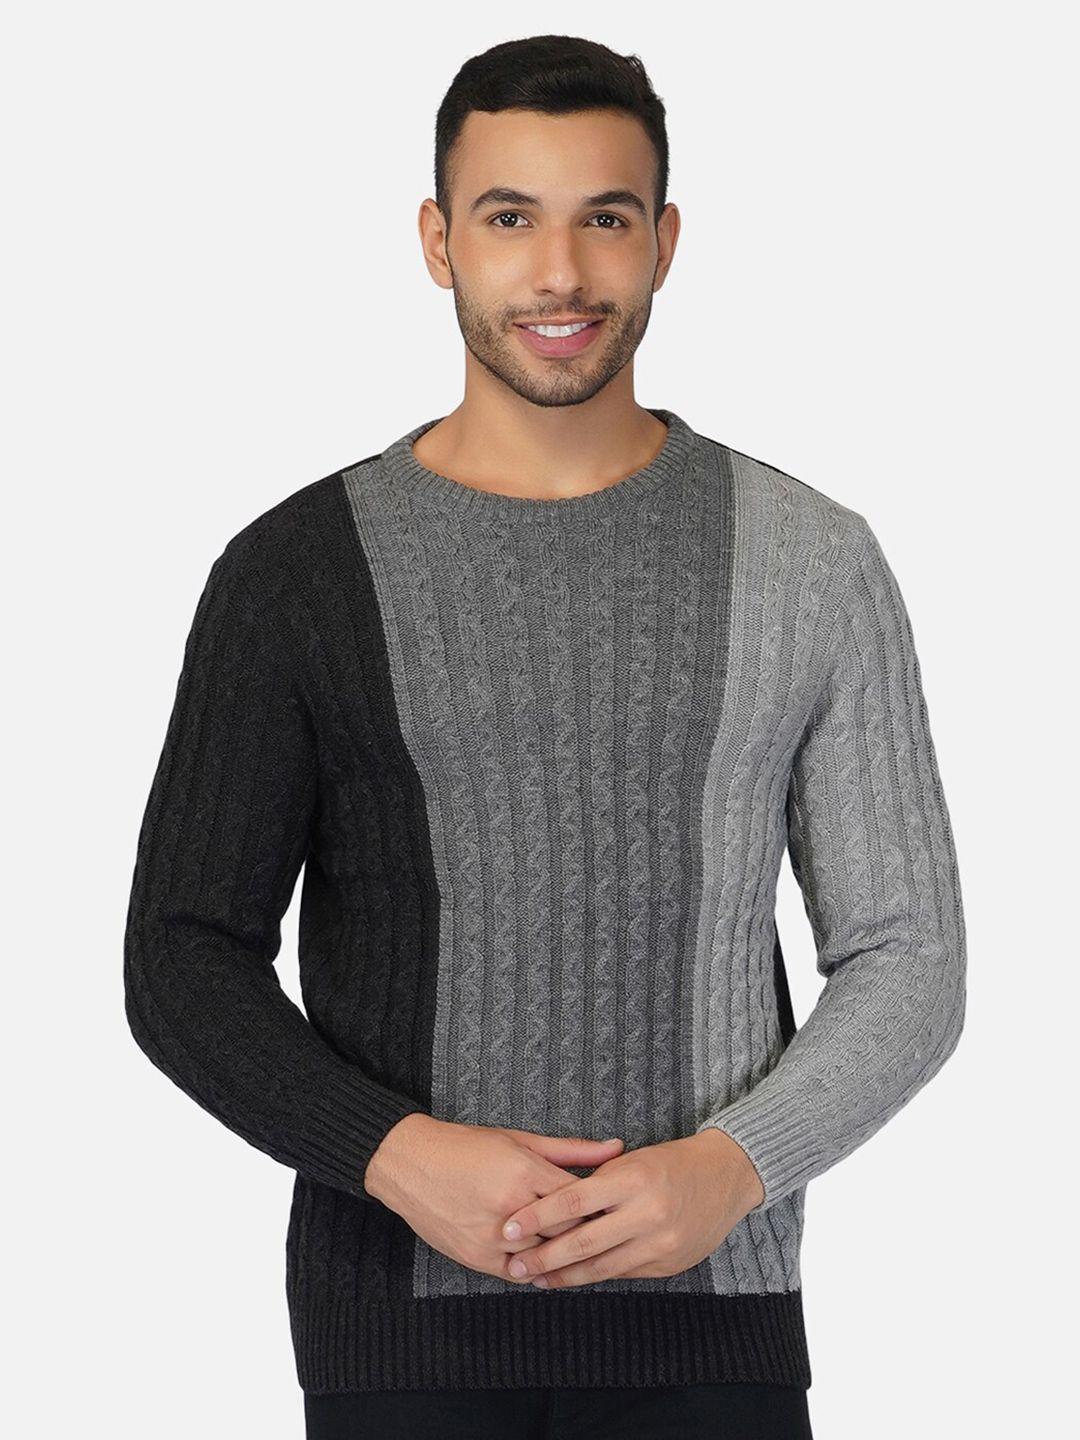 joe hazel men grey & black colourblocked pullover